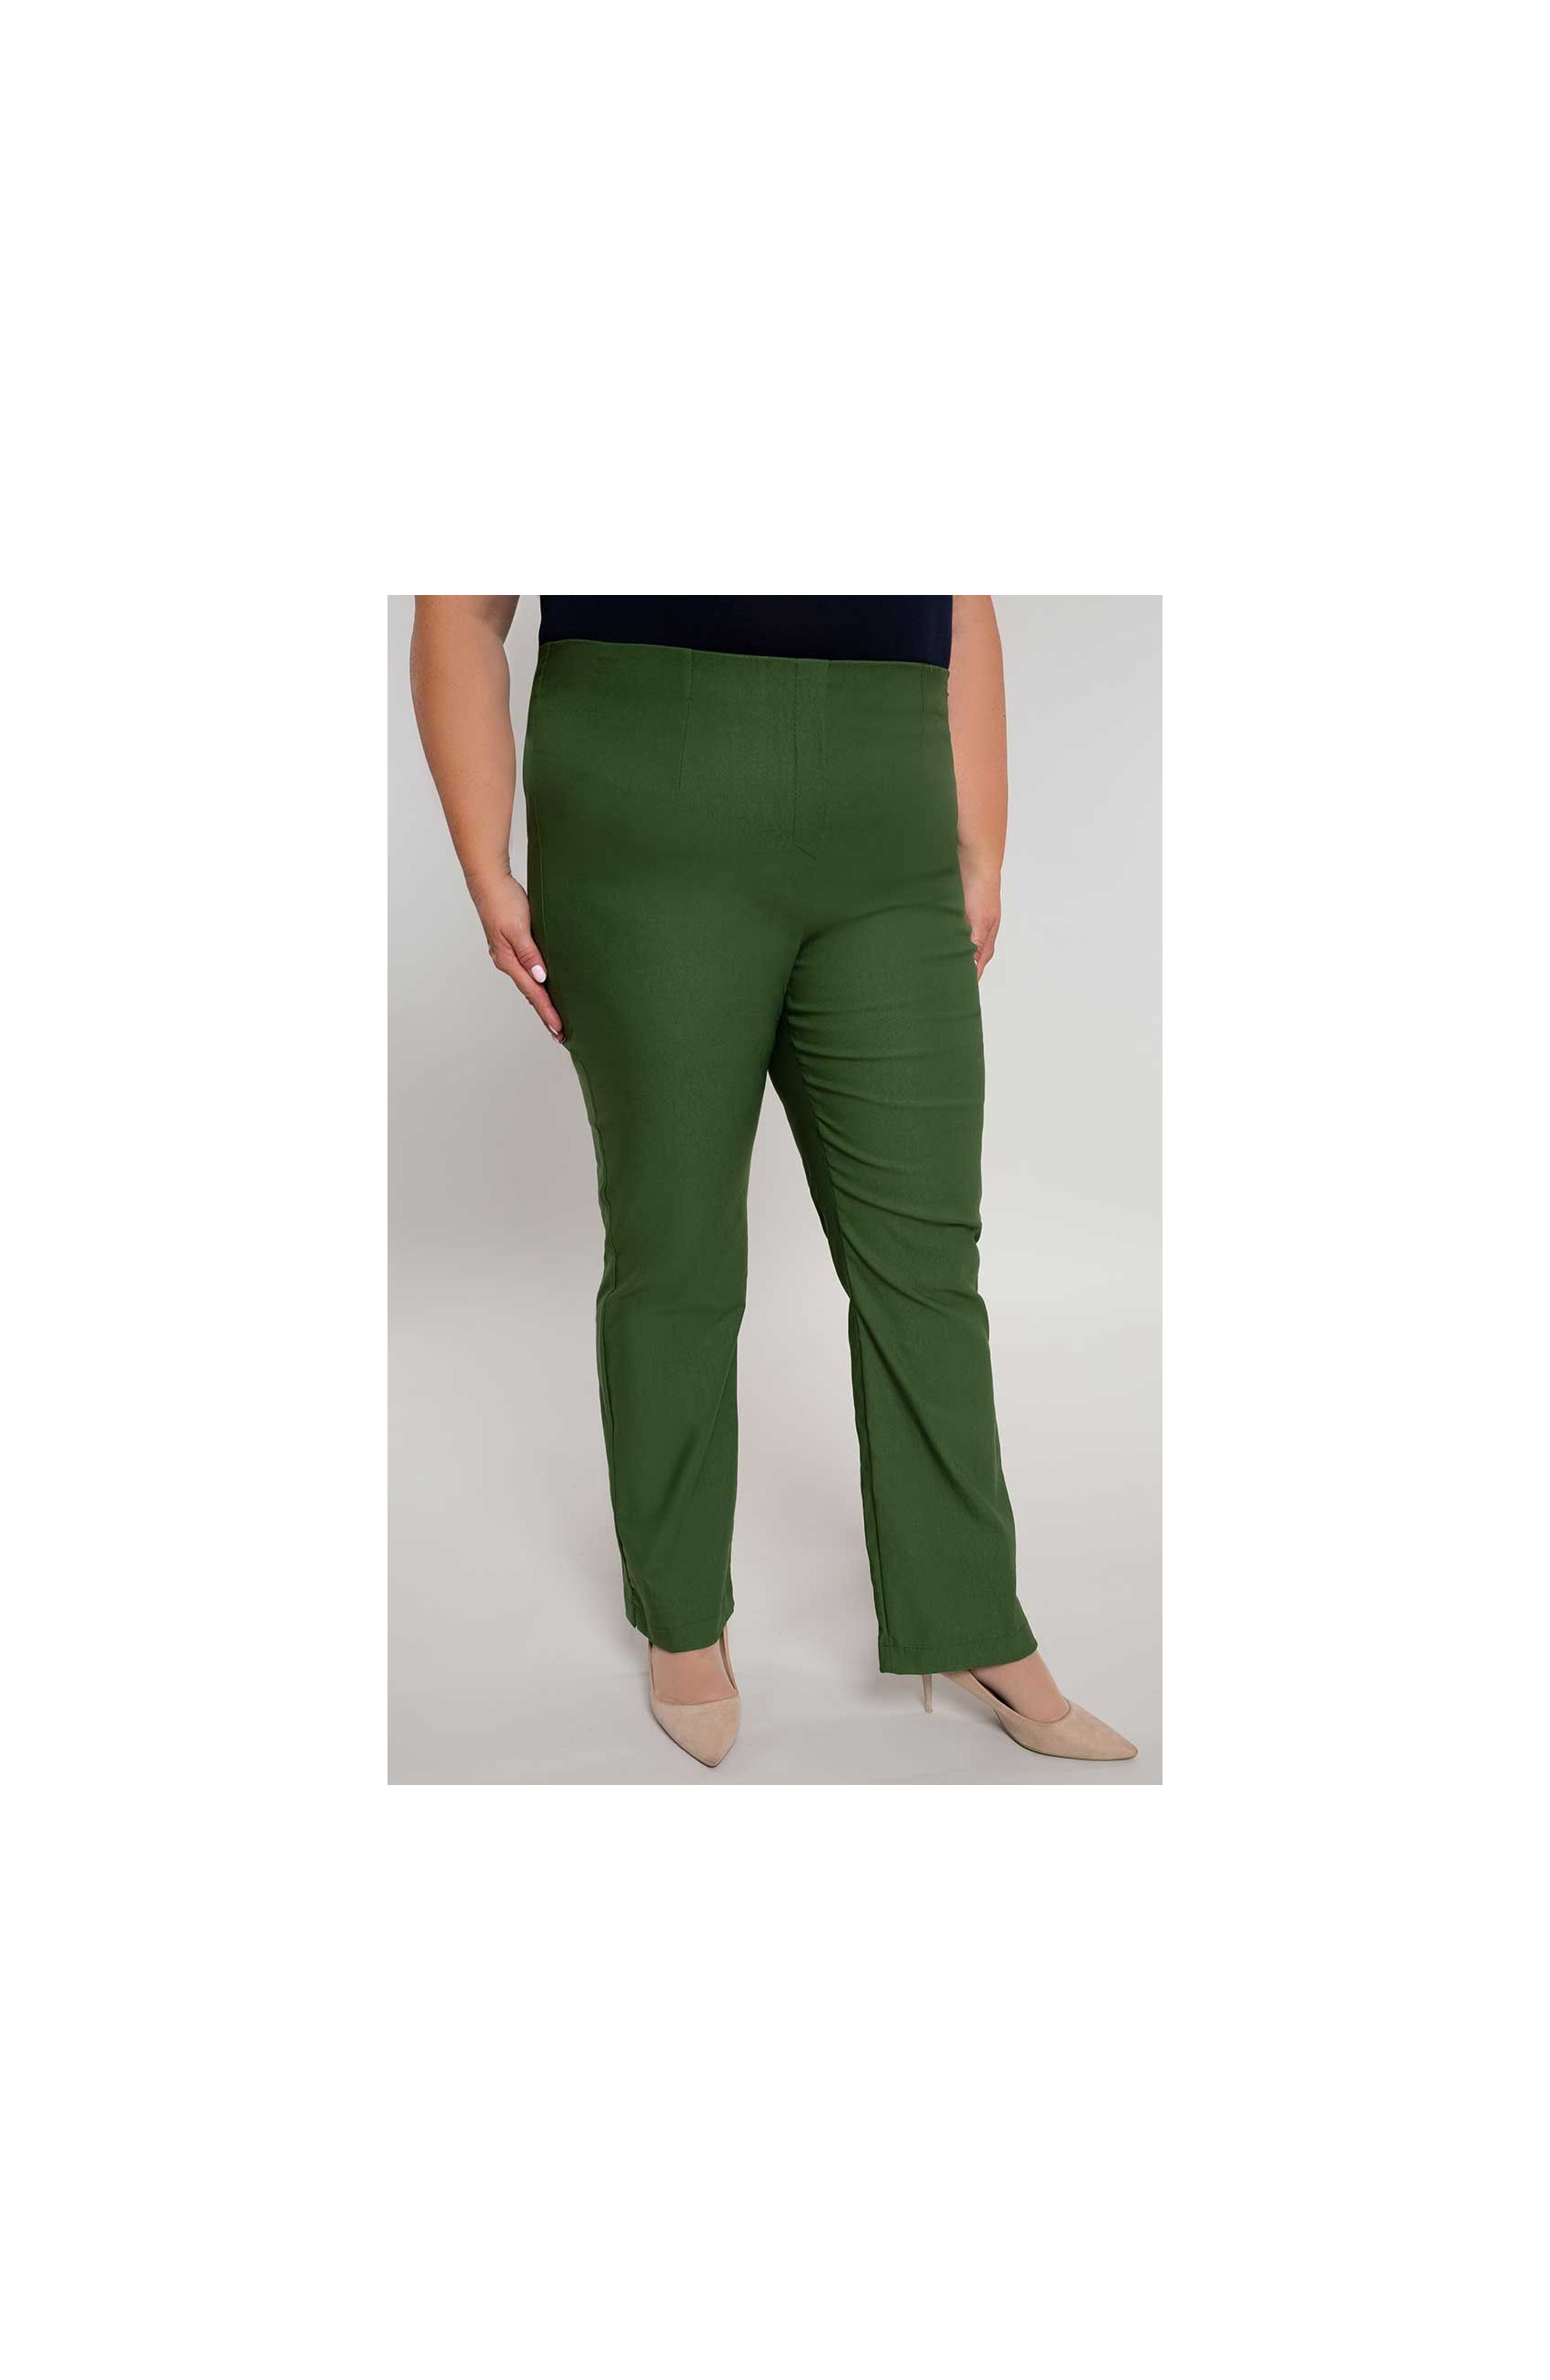 Dłuższe proste spodnie plus size dla puszystych w kolorze oliwki